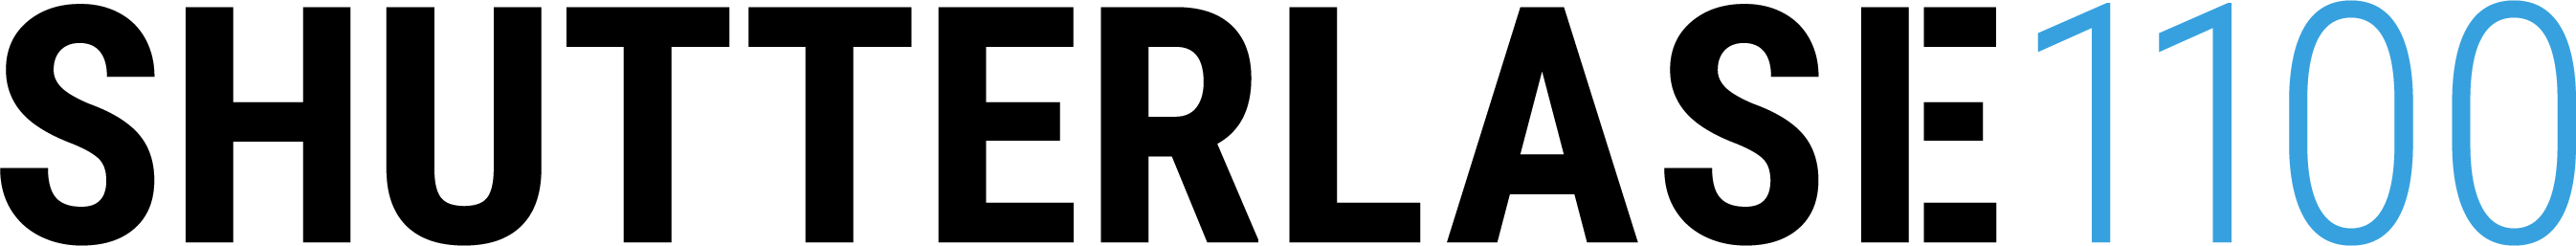 Shutterlase logo